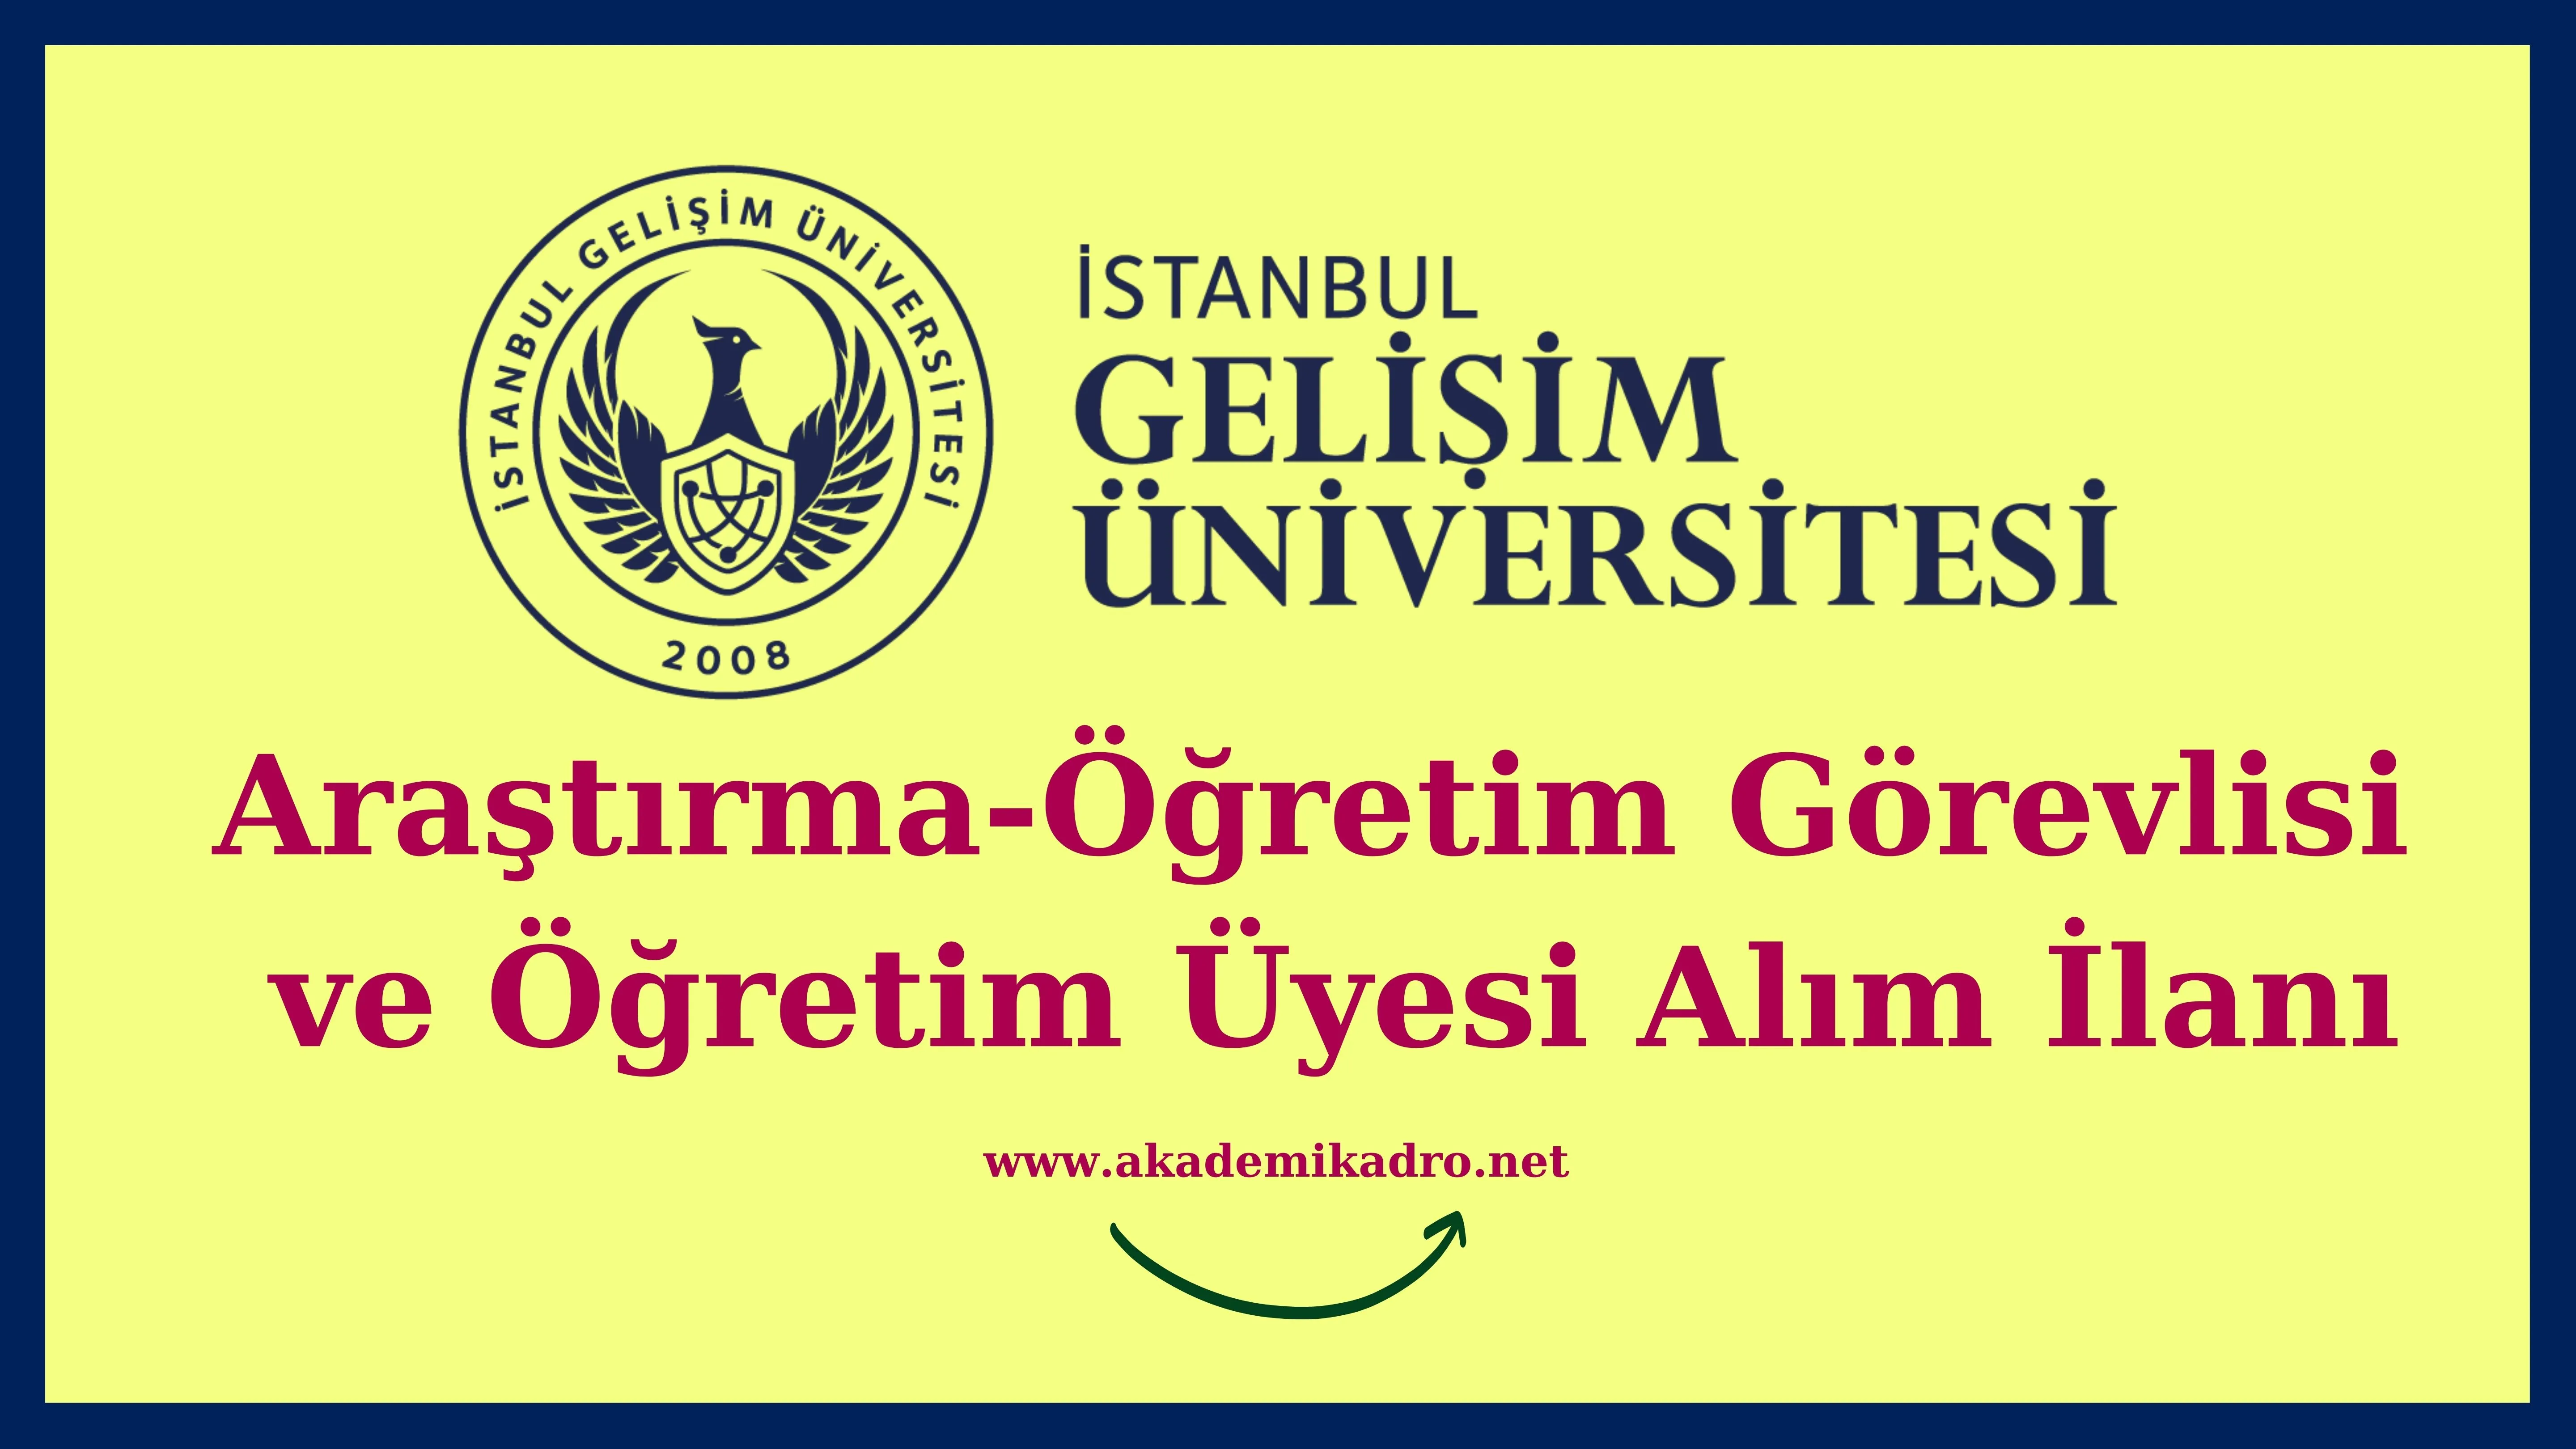 İstanbul Gelişim Üniversitesi 14 Araştırma görevlisi,12 Öğretim görevlisi ve 72 Öğretim üyesi alacak.